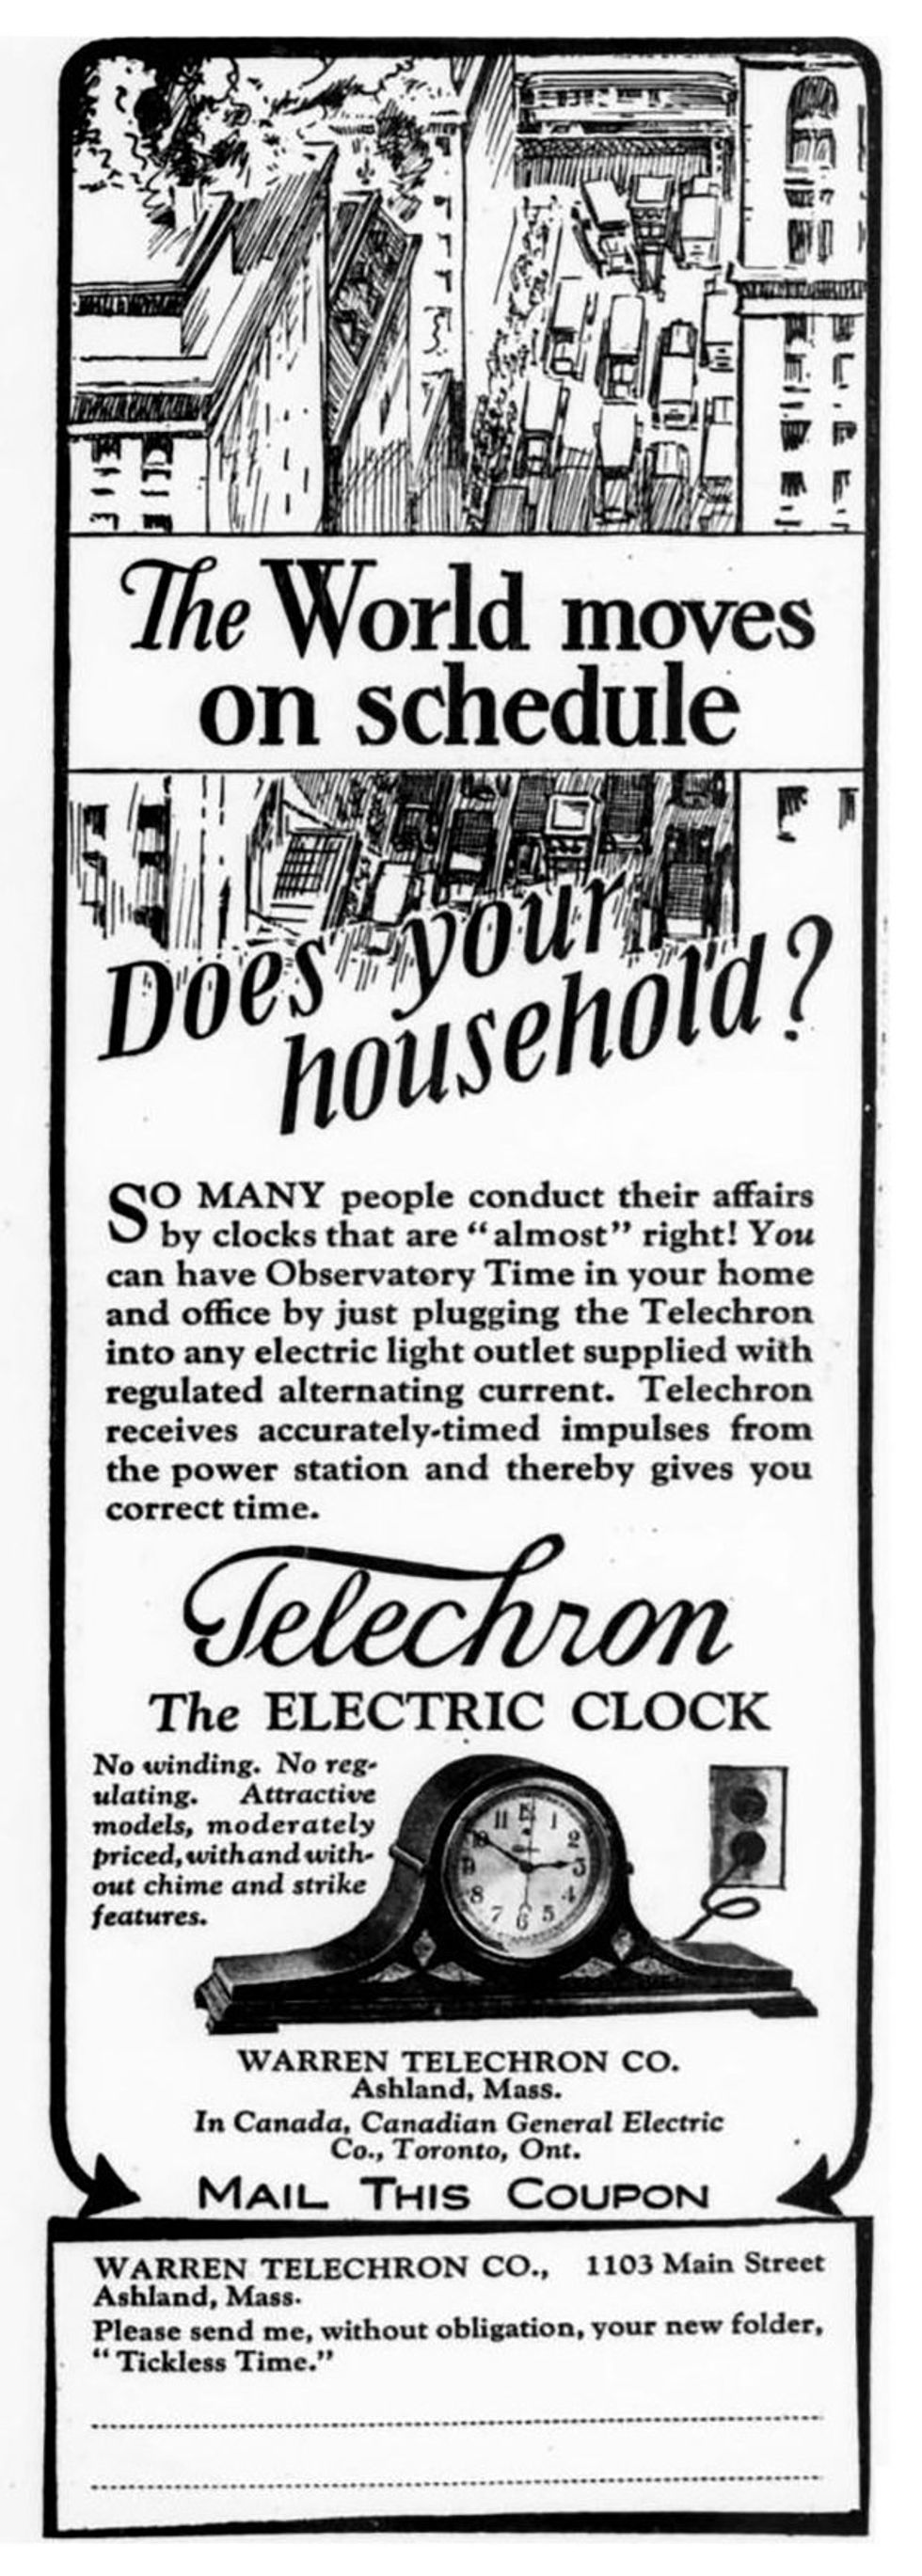 Image d’une ancienne publicité dans un magazine pour une horloge électrique.